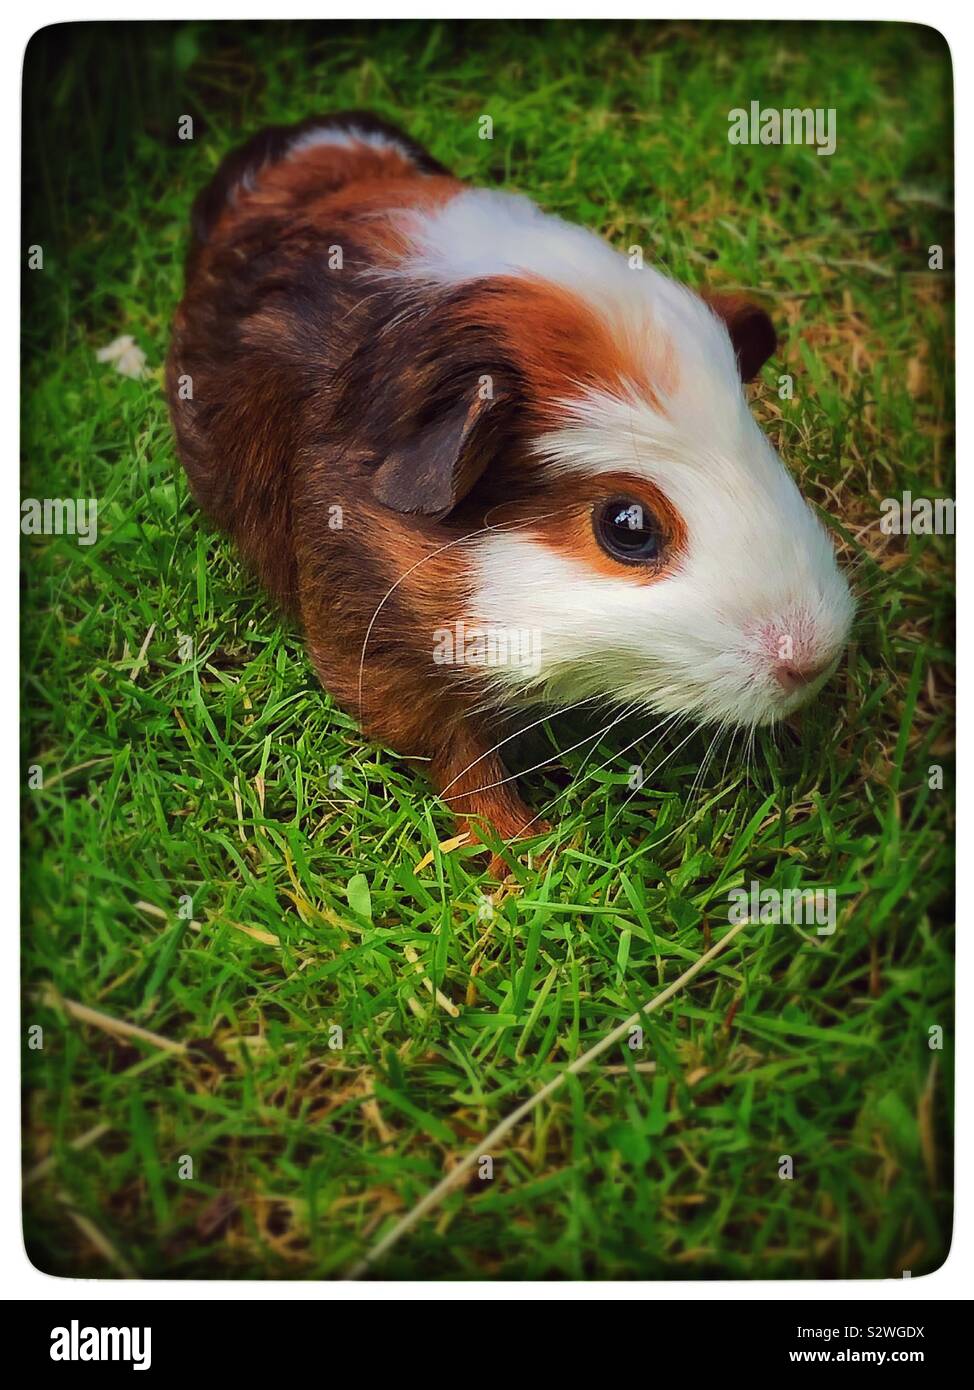 Cochon d'Inde marron et blanc sur l'herbe Banque D'Images